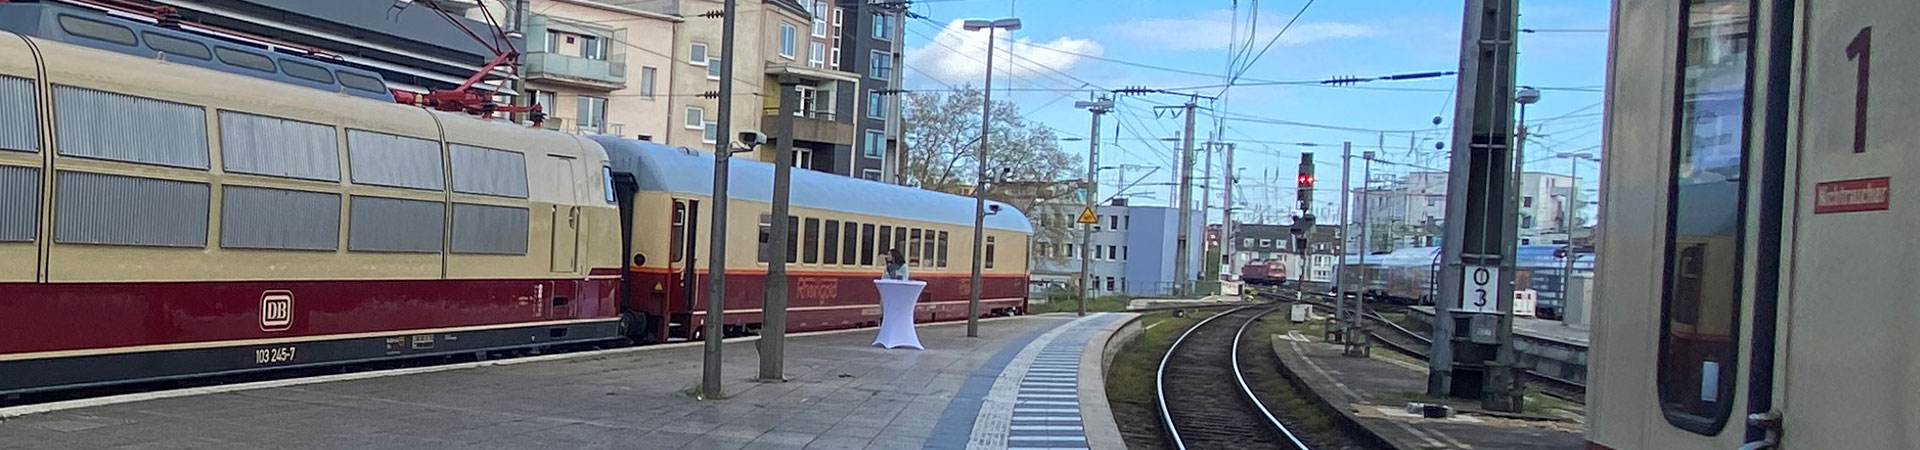 Köln Bahnsteig Jobbörse